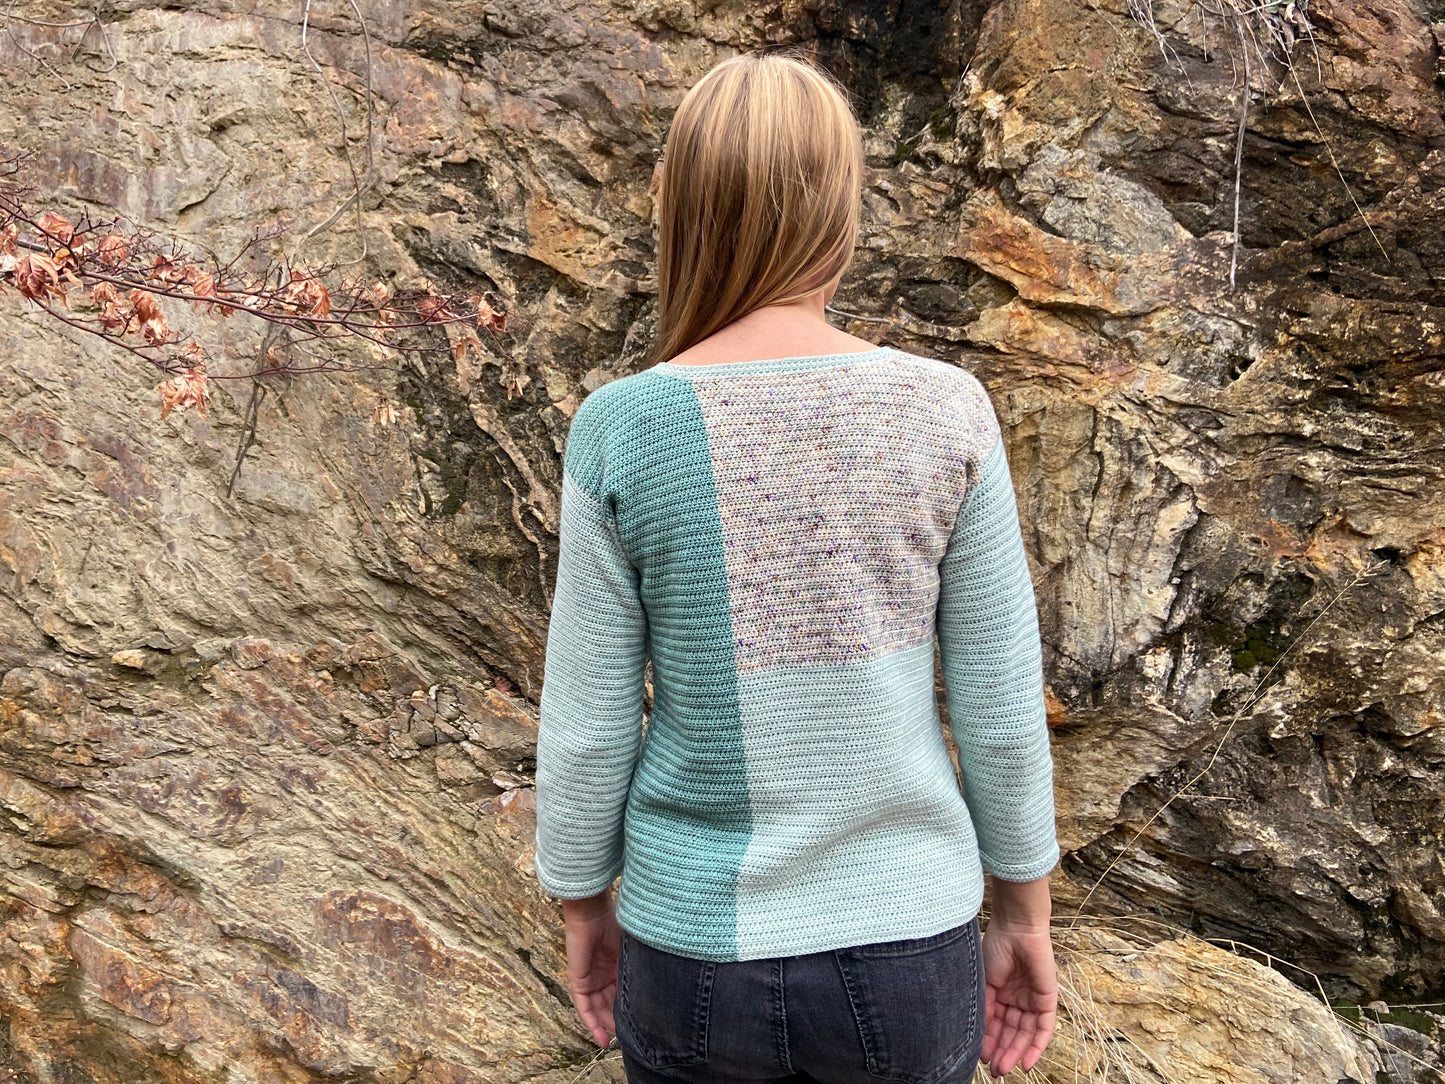 Freya Pullover Kit (Yarn + Pattern)